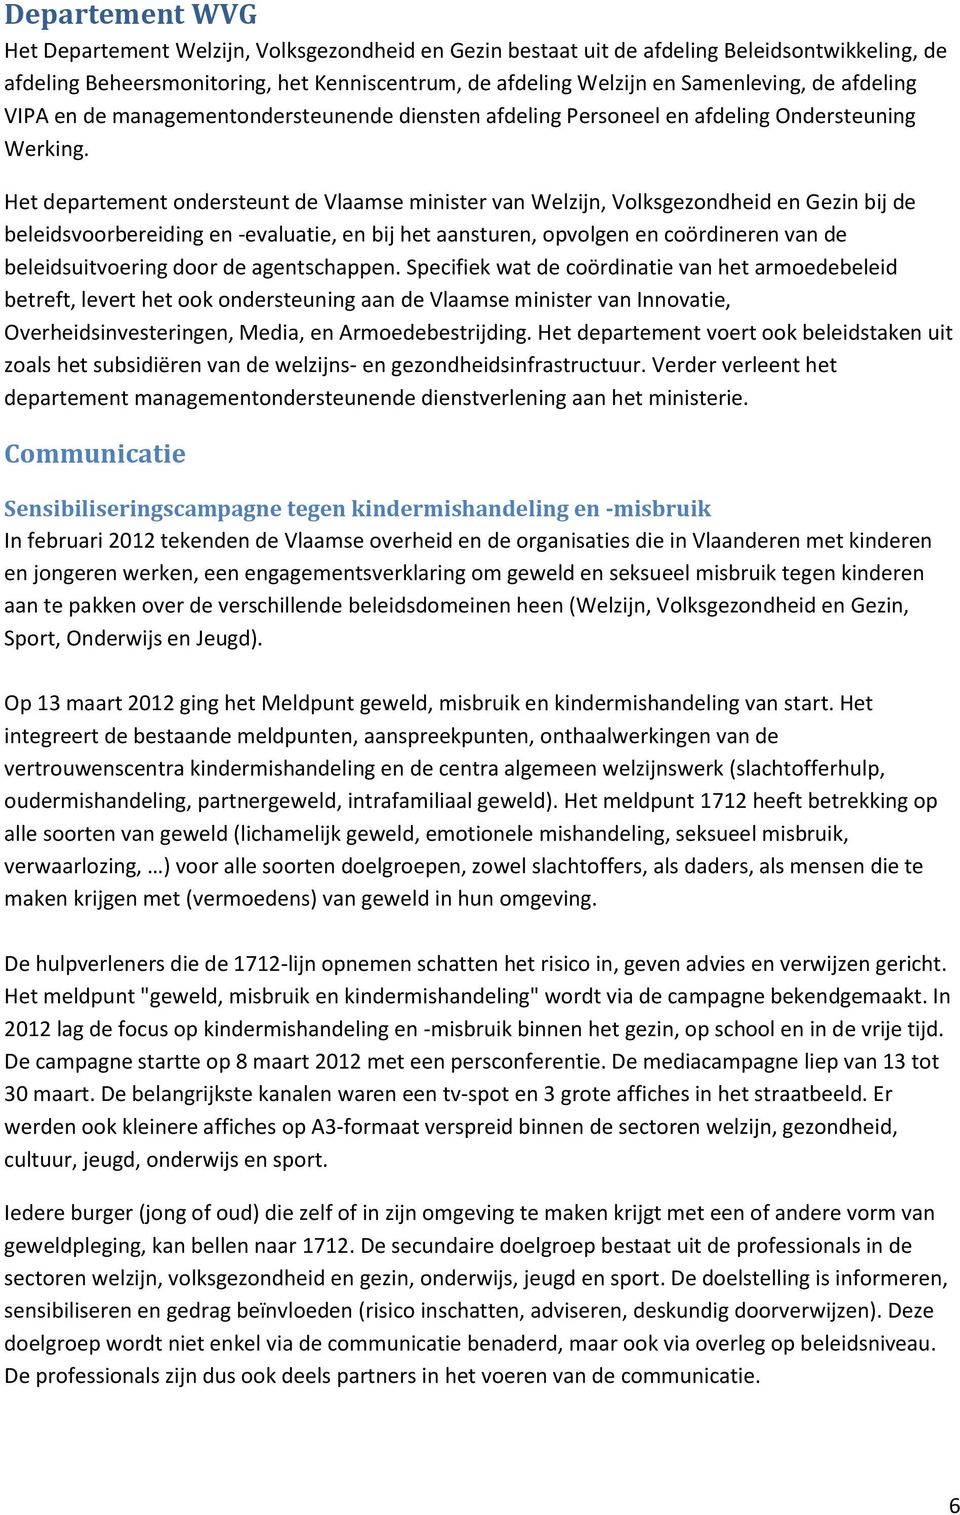 Het departement ondersteunt de Vlaamse minister van Welzijn, Volksgezondheid en Gezin bij de beleidsvoorbereiding en -evaluatie, en bij het aansturen, opvolgen en coördineren van de beleidsuitvoering